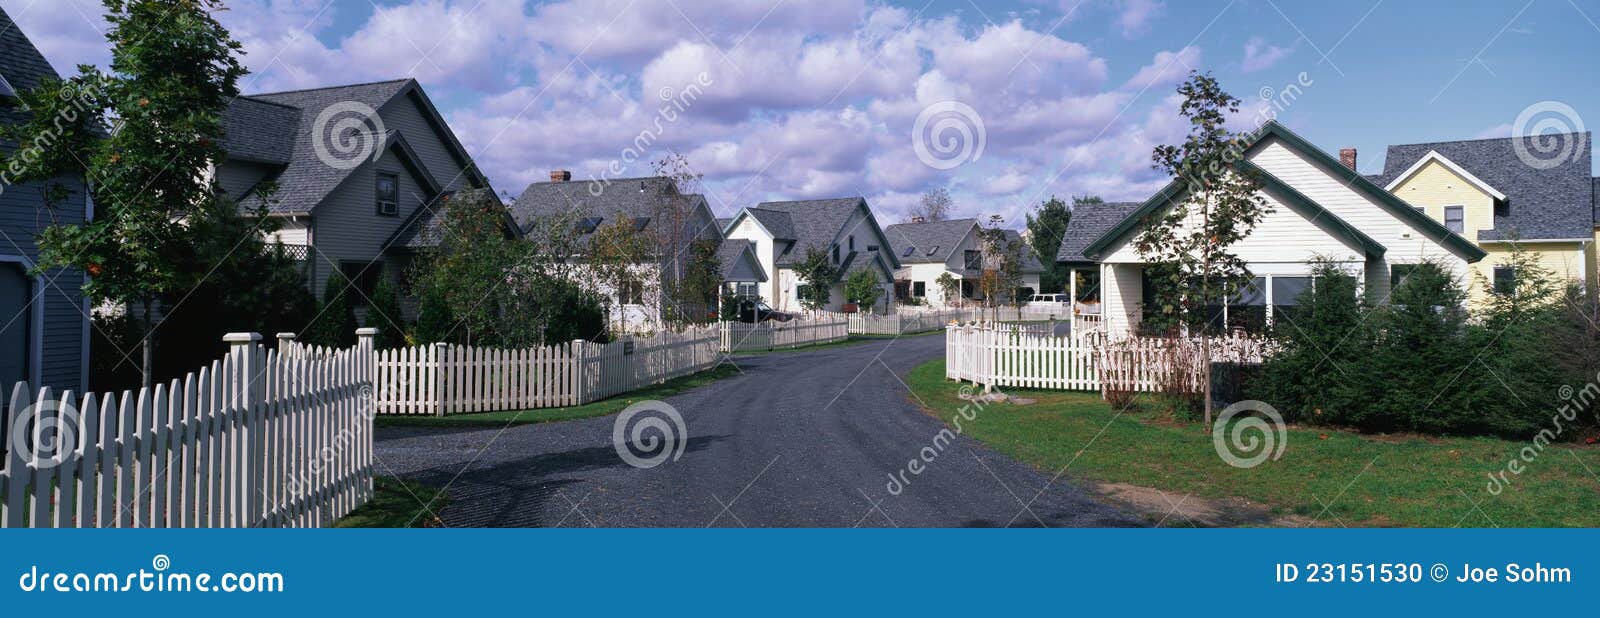 suburban neighborhood homes